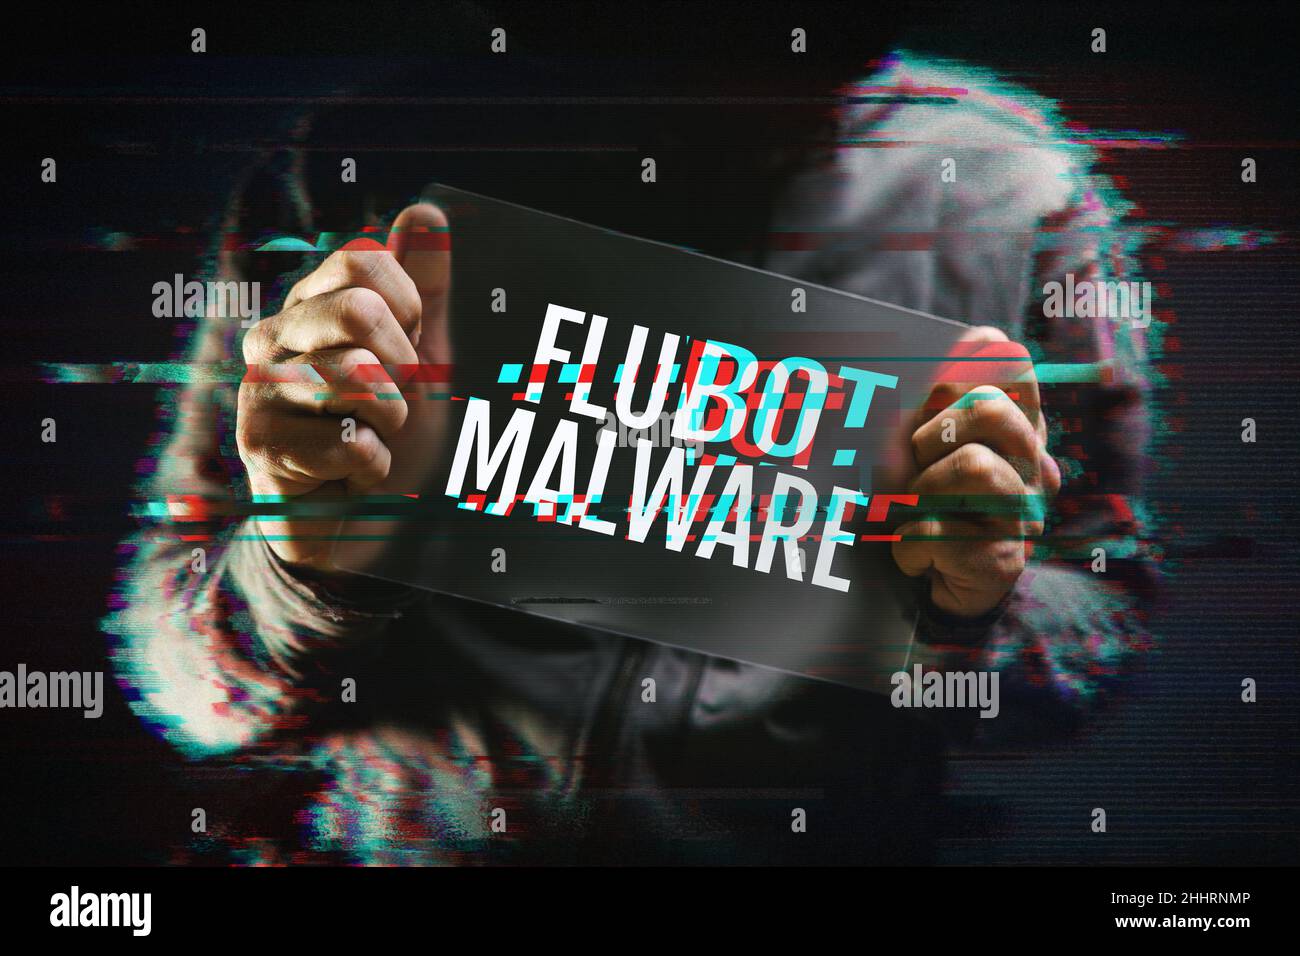 Flubot malware concept avec hacker à capuchon et effet de glitch.Flubot est un logiciel malveillant distribué sur des plates-formes mobiles. Banque D'Images